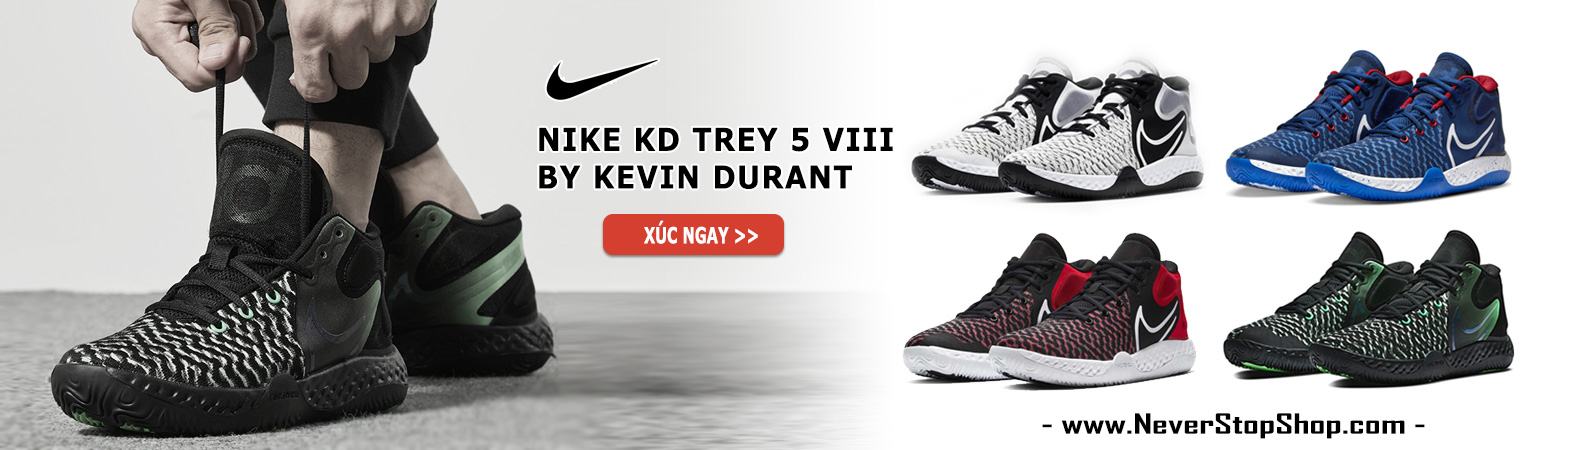 Giày Nike KD Trey 5 VIII bóng rổ cổ cao nam sfake replica giá rẻ tốt nhất HCM NeverStopShop